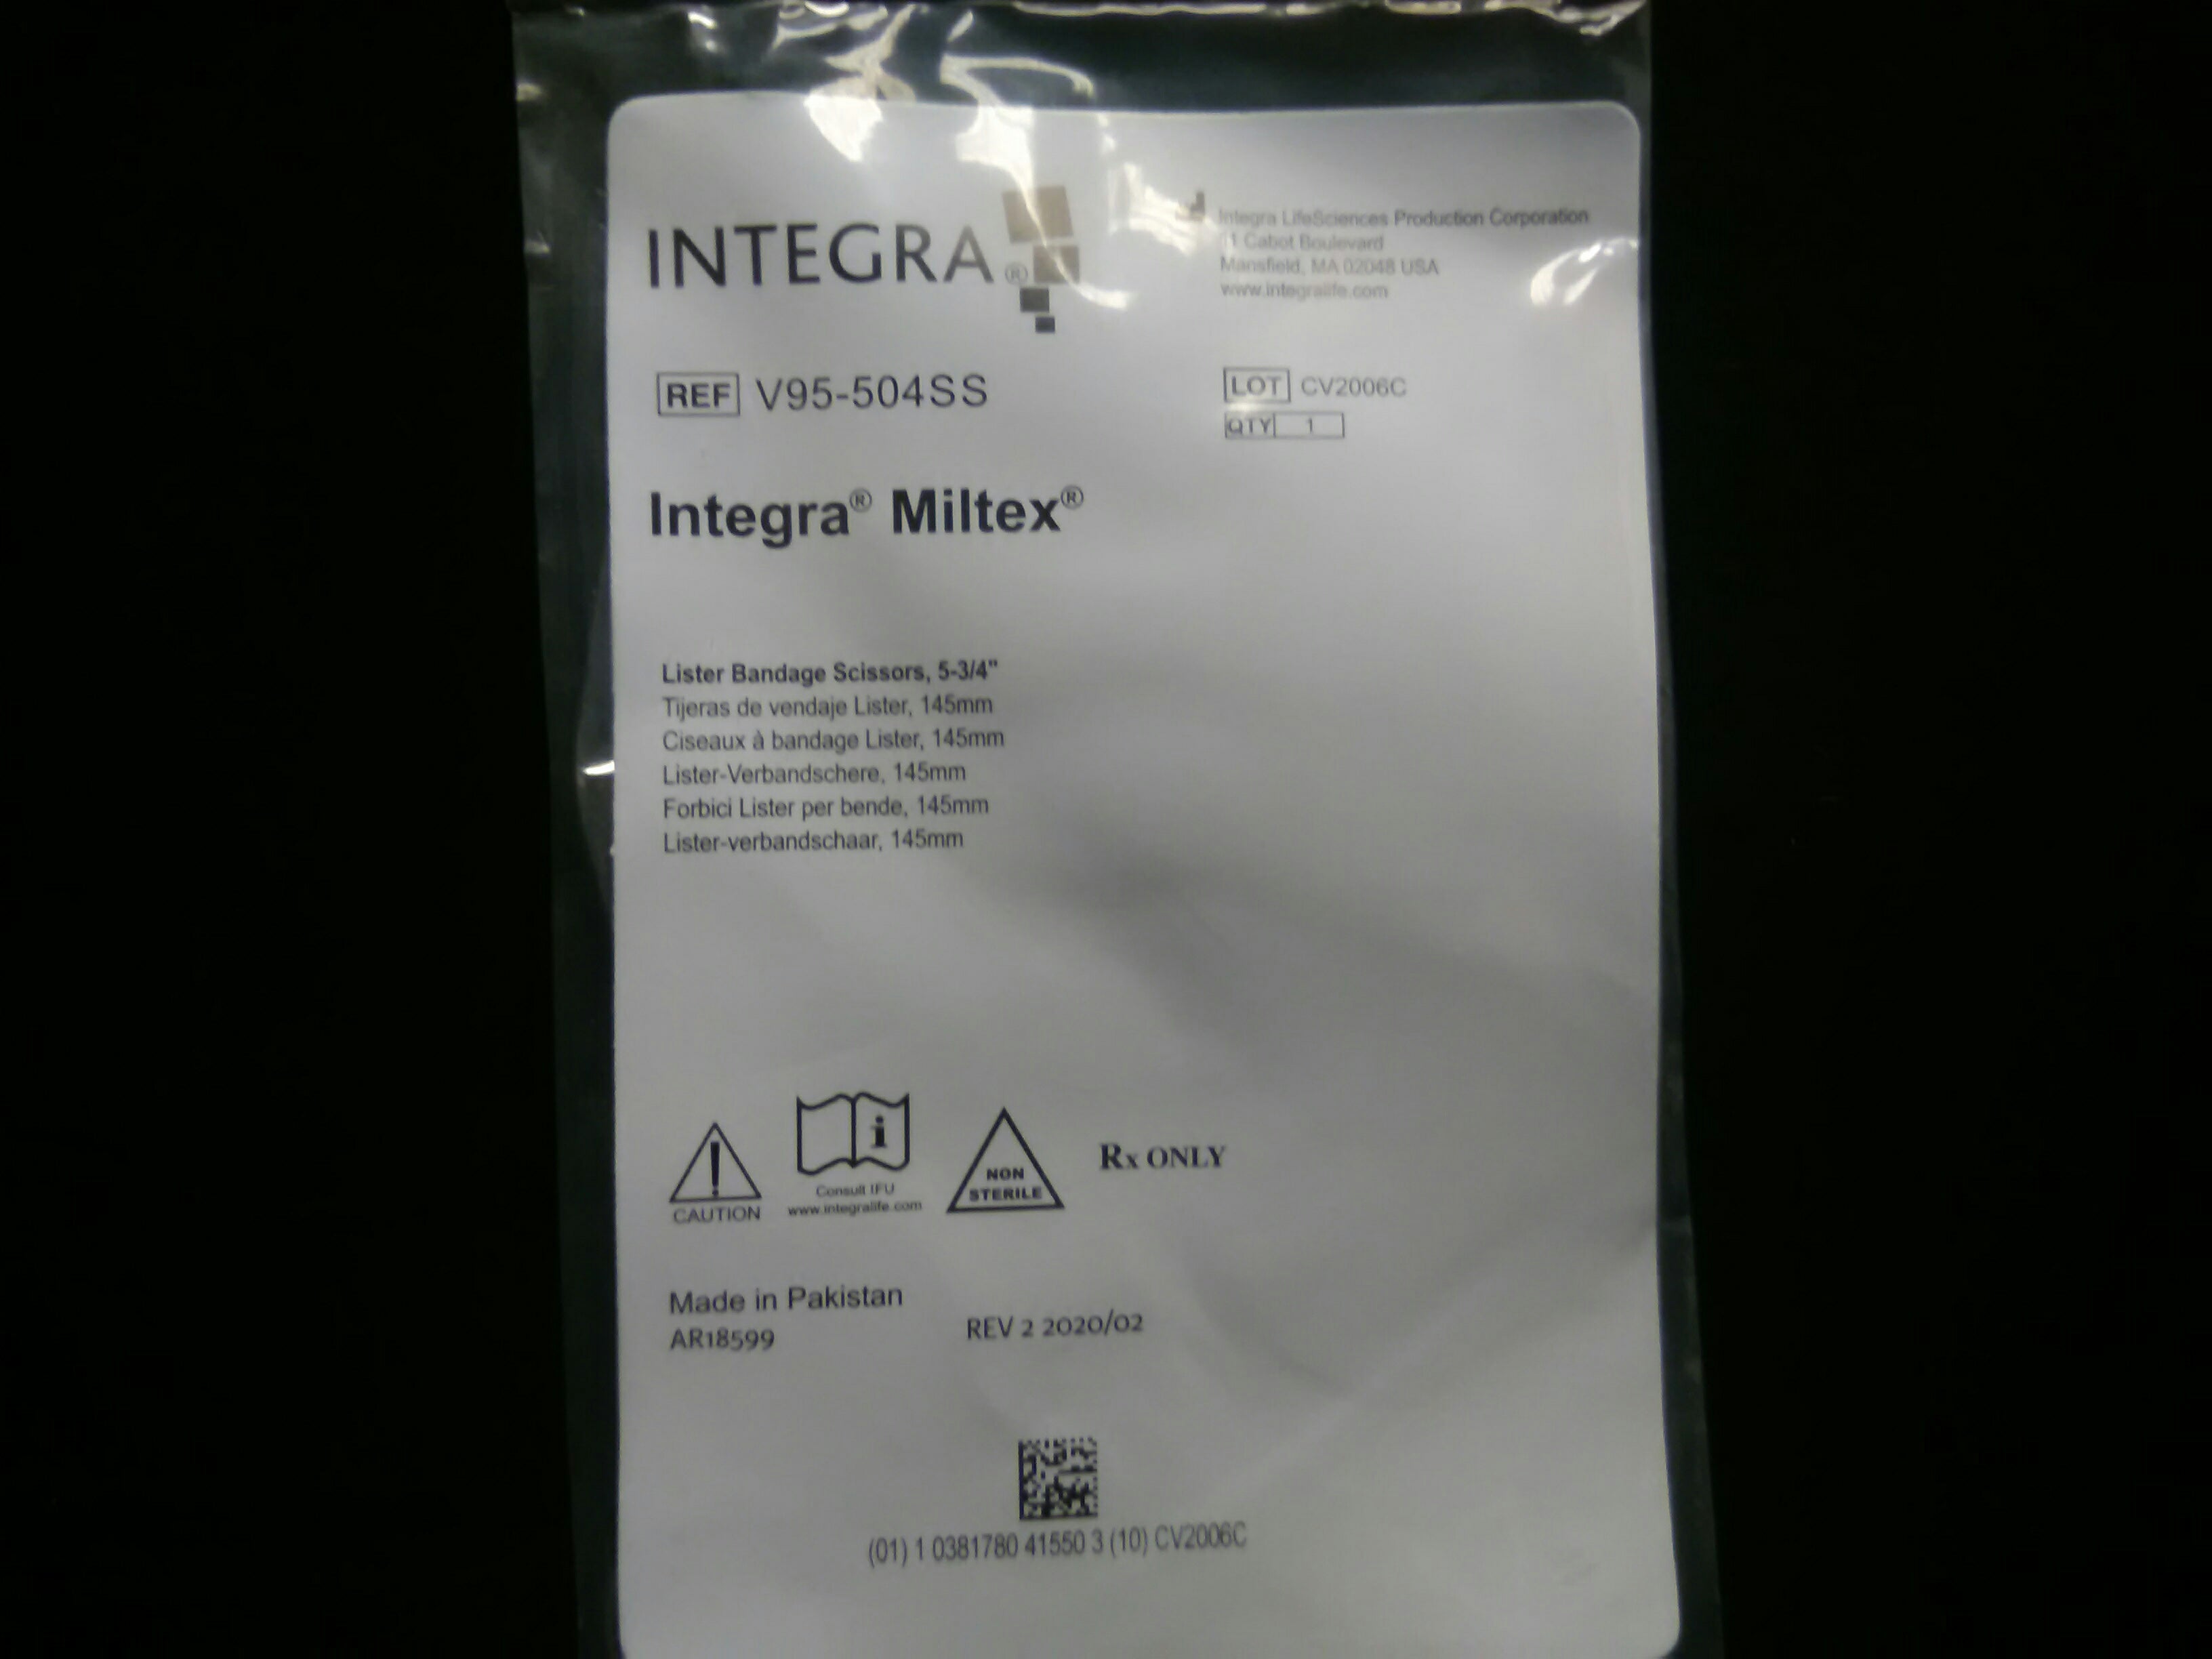 INTEGRA/ MILTEX V95-504SS Vantage Lister Bandage Scissors Stainless steel